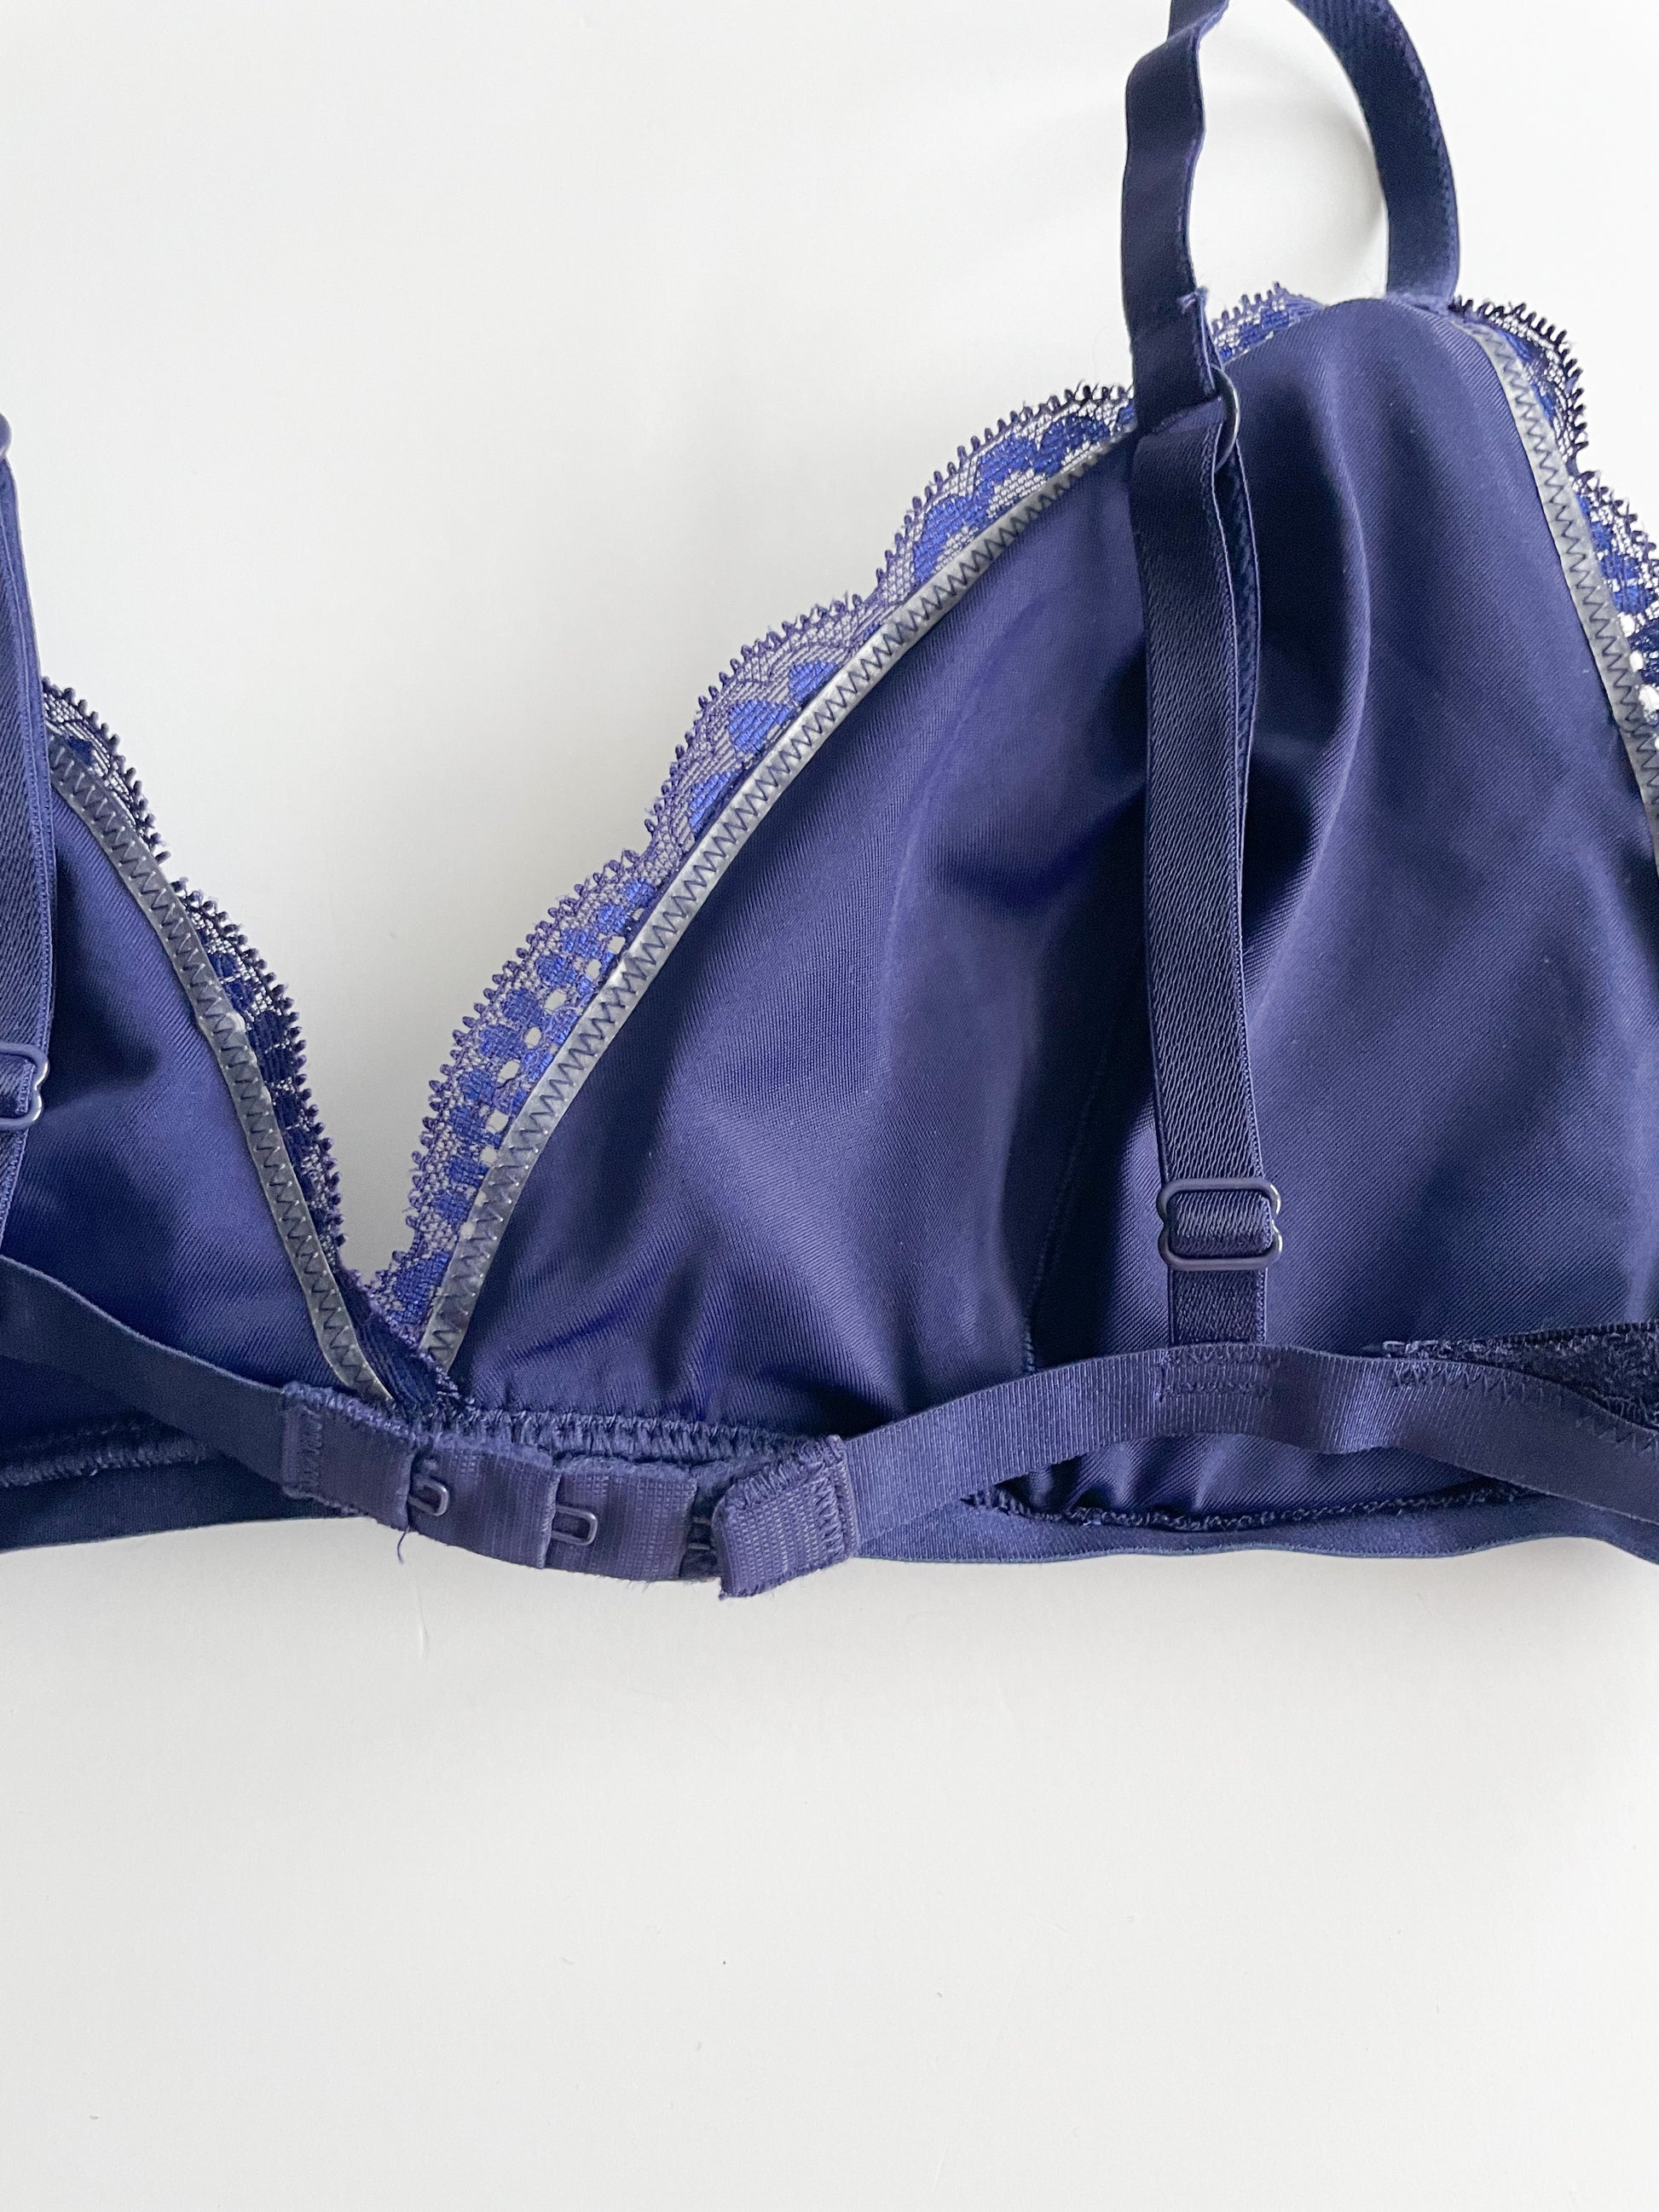 La Senza Blue Lace Lined Triangle Bralette - Medium – Le Prix Fashion &  Consulting